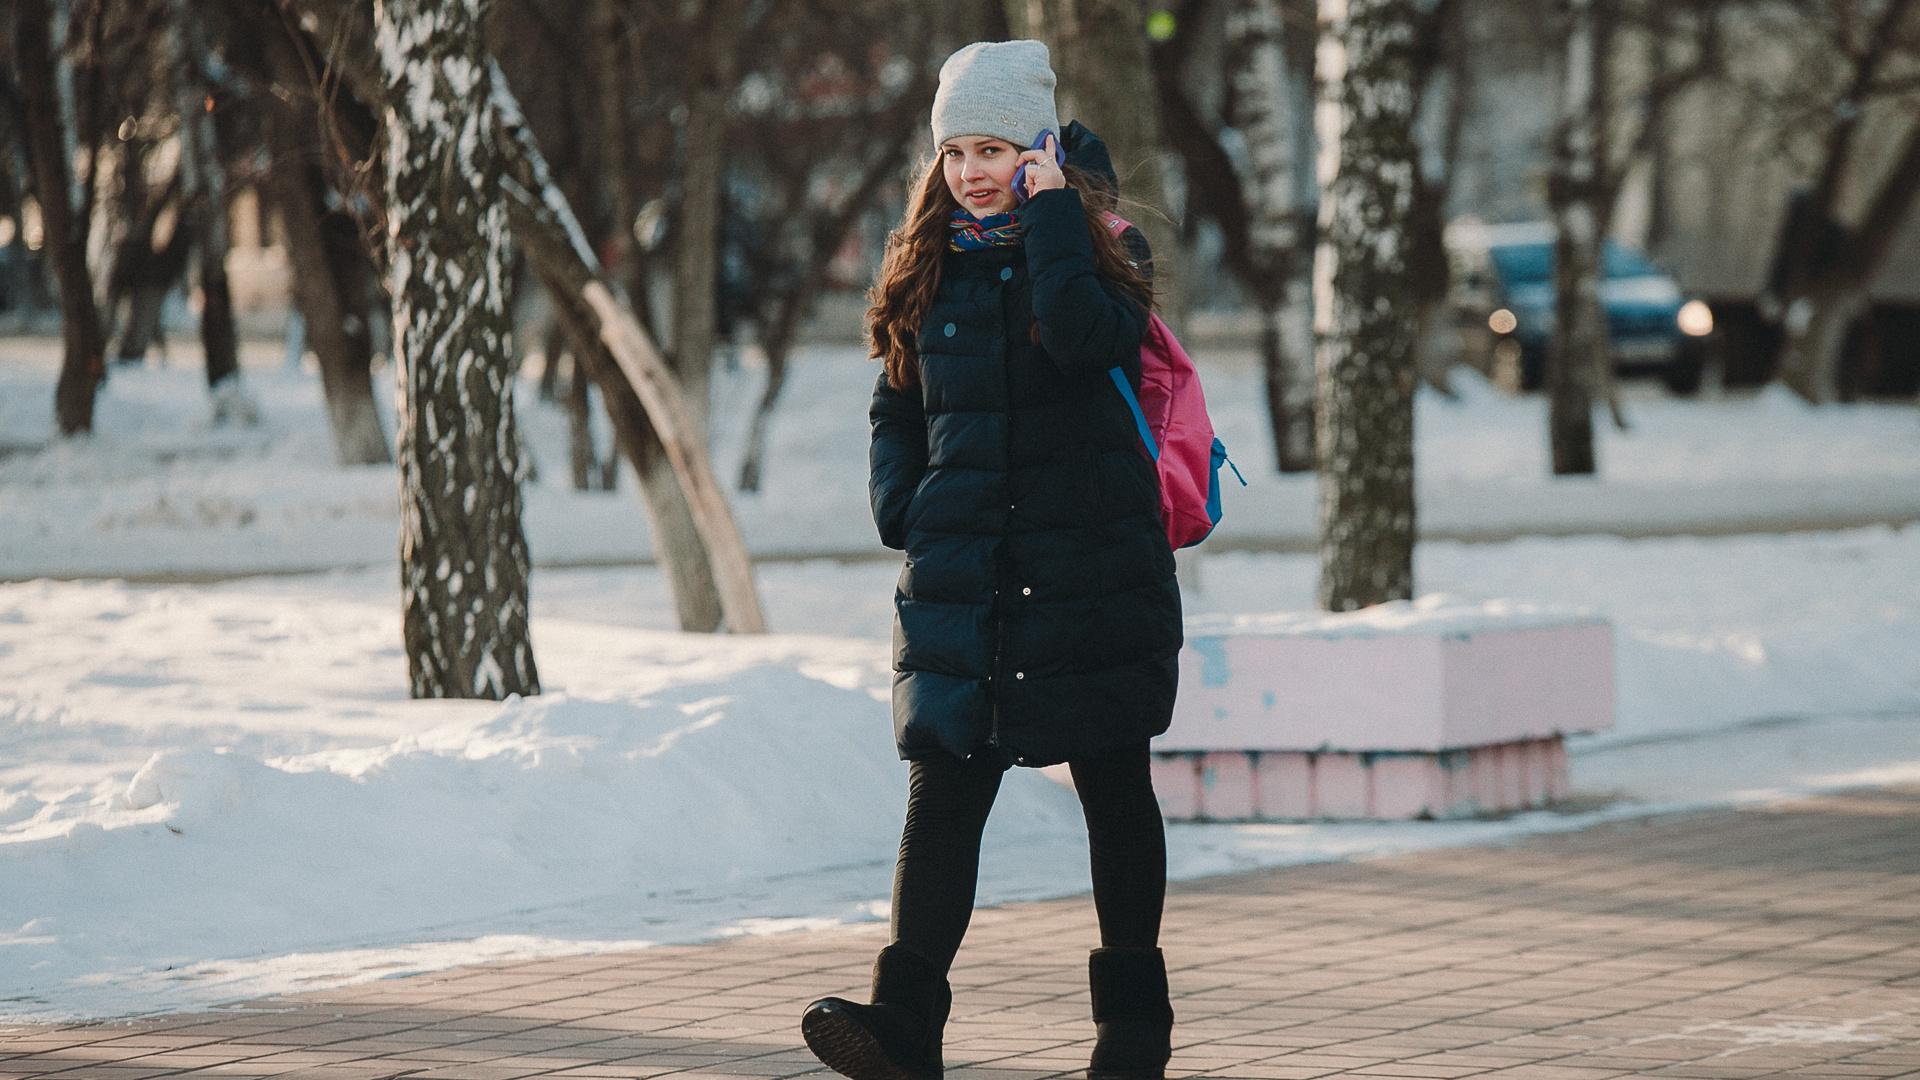 Фото 14 лет девочка в школе зимой утром. Отменили школу сегодня в тюмени